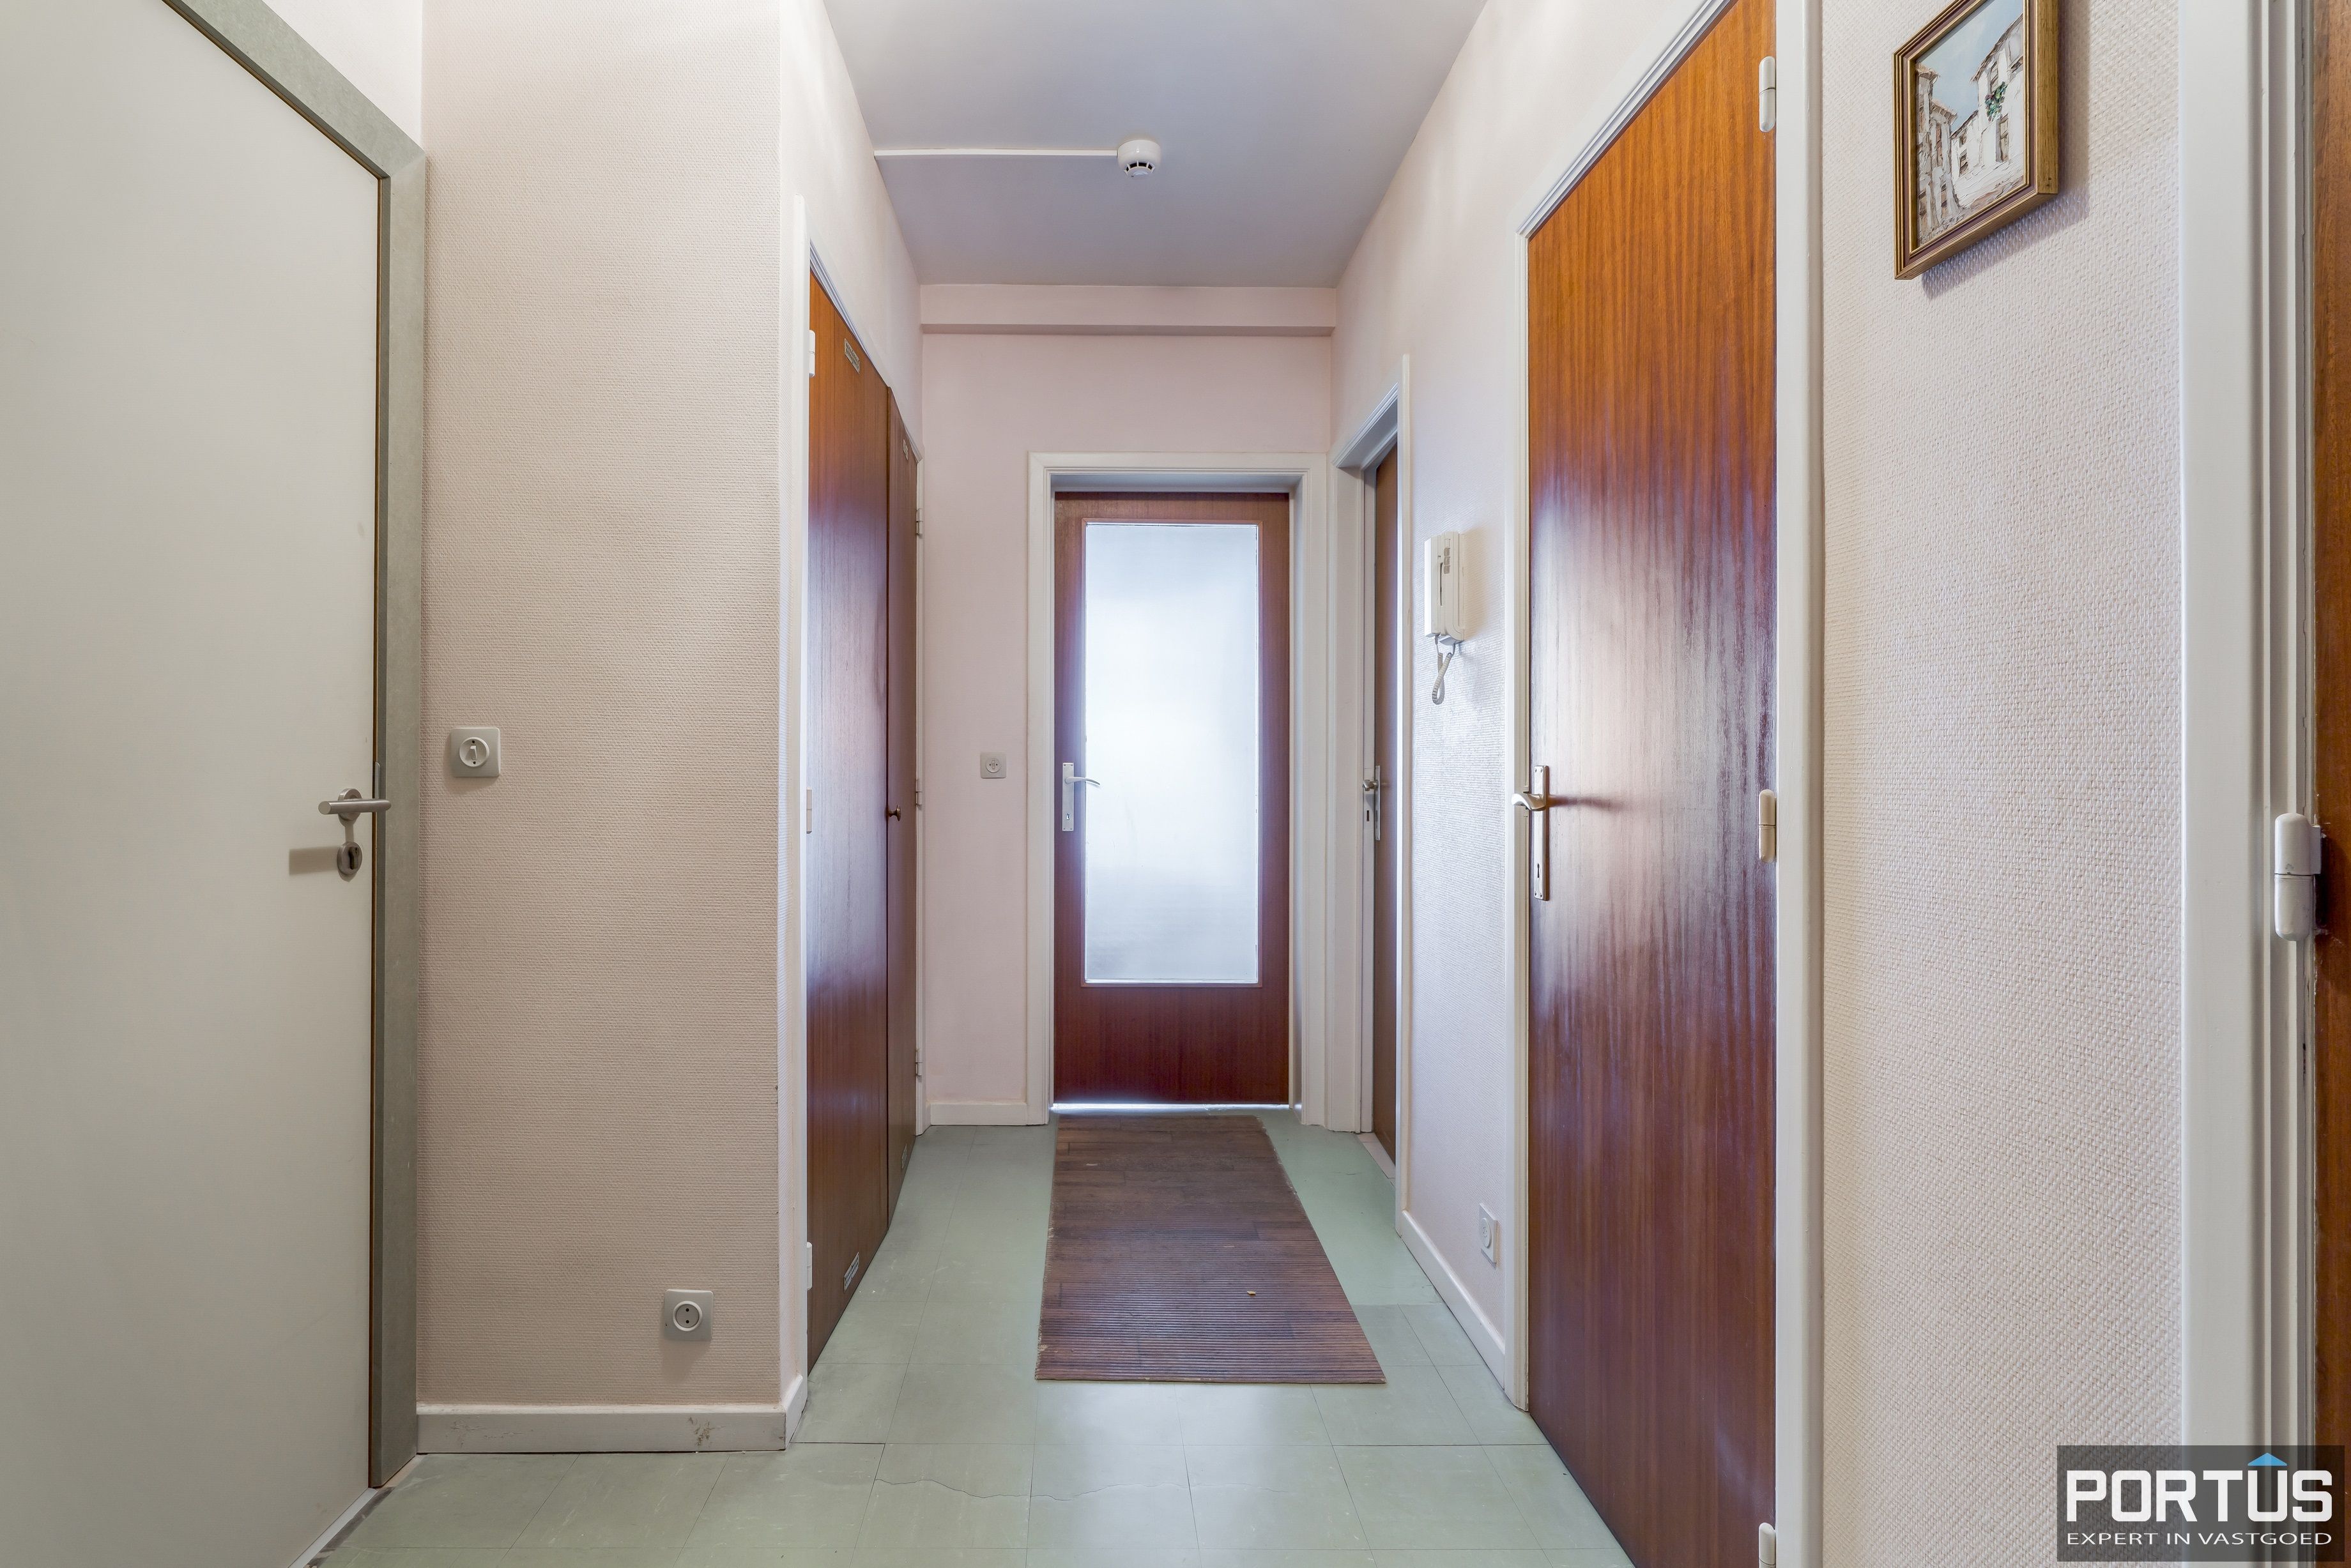 Appartement met 3 slaapkamers en frontaal zeezicht te koop te Nieuwpoort-Bad - 14267